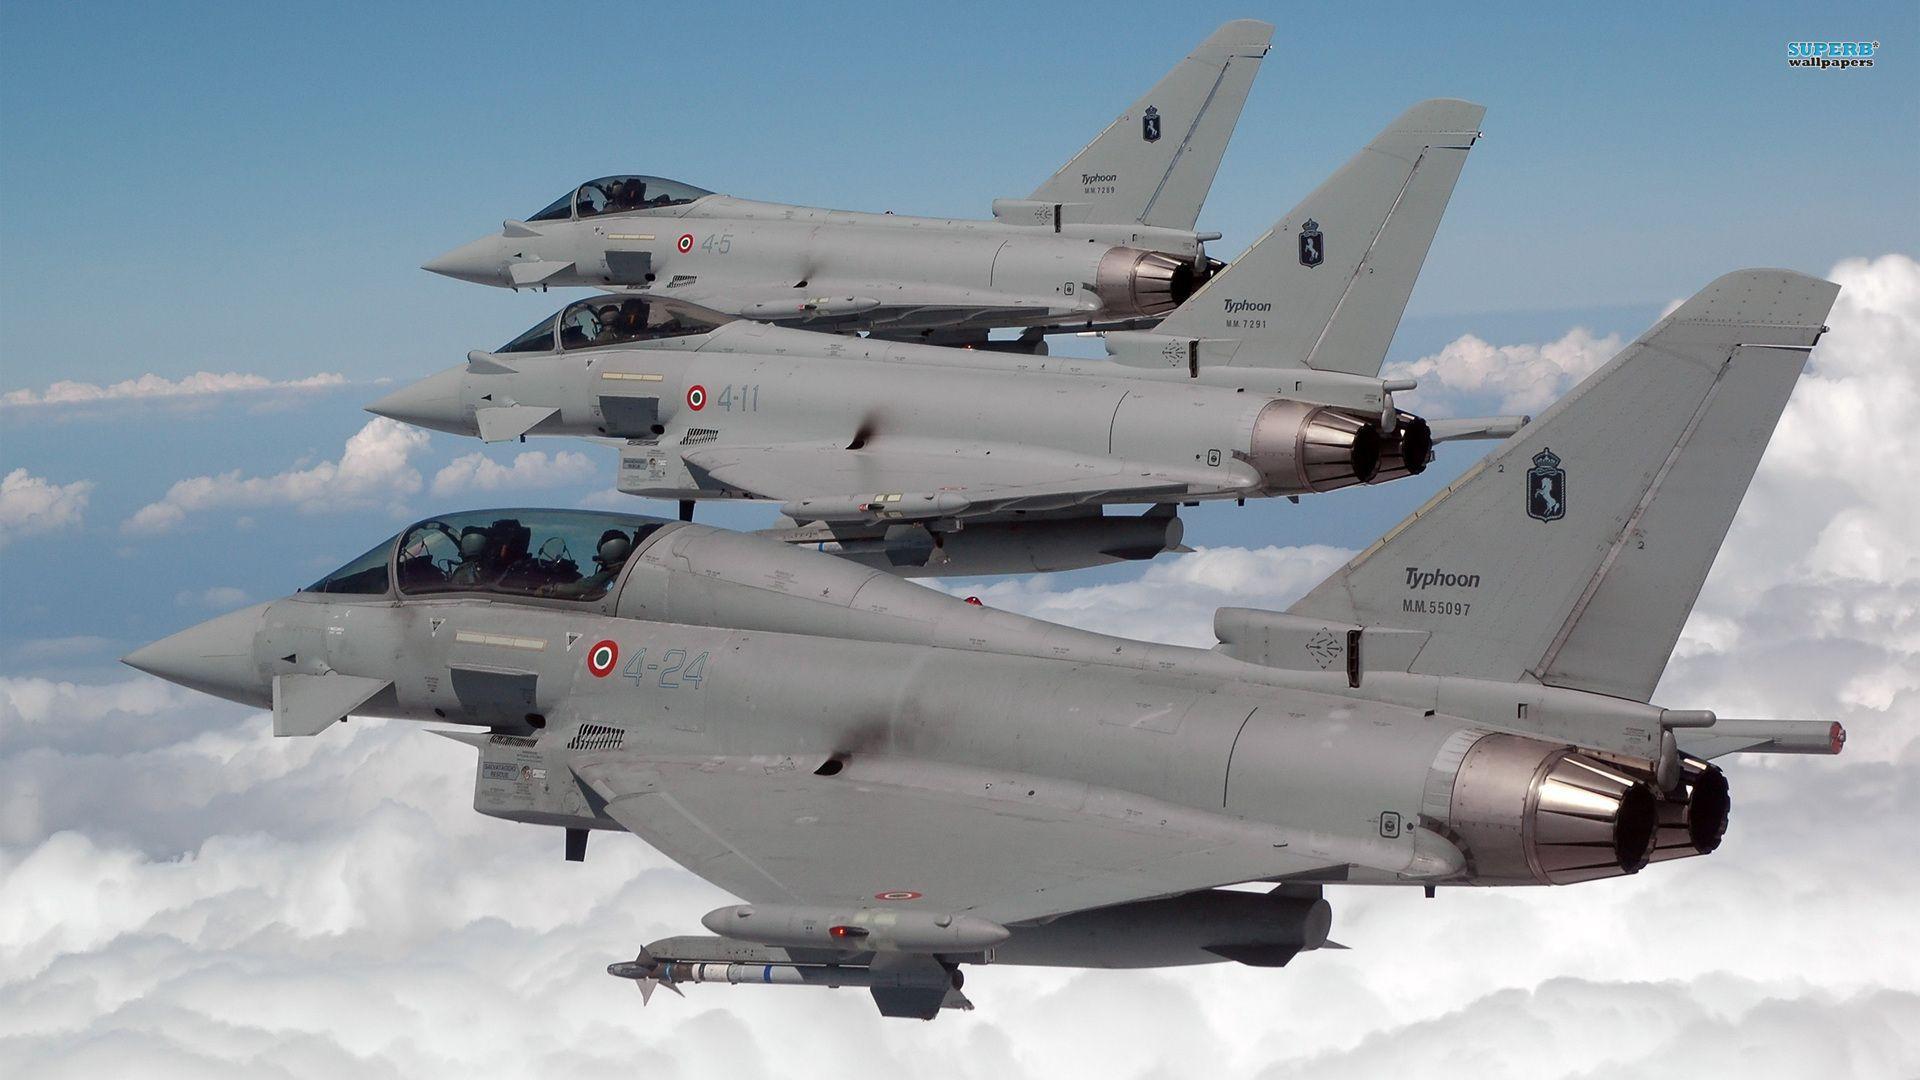 Eurofighter Typhoon Wallpaper